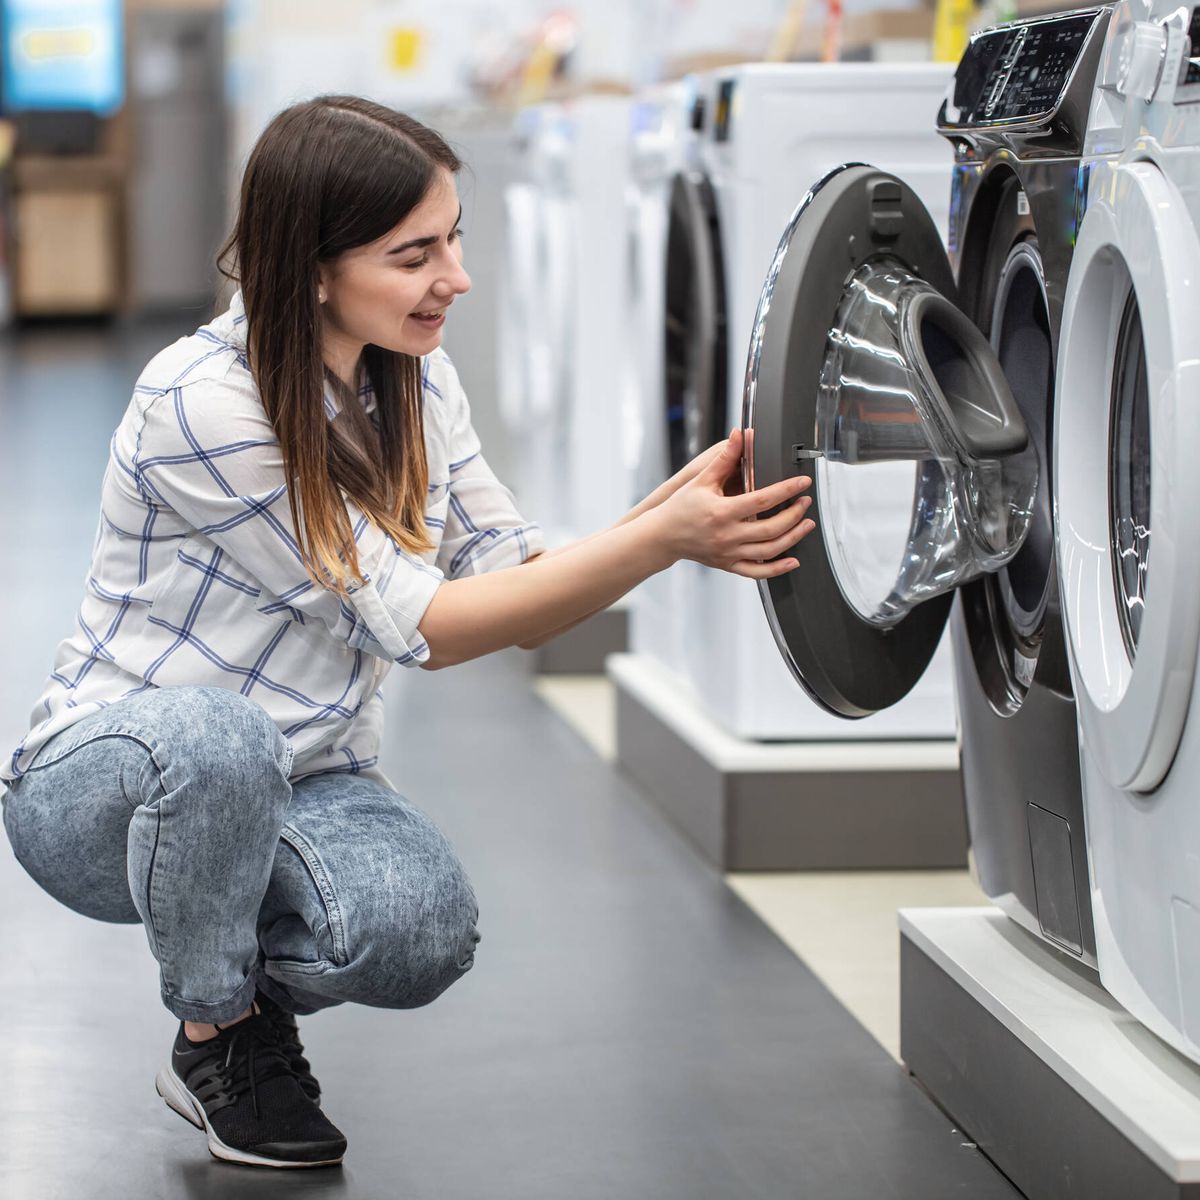 Los mejores descuentos en lavadoras, microondas lavavajillas de este Black Friday